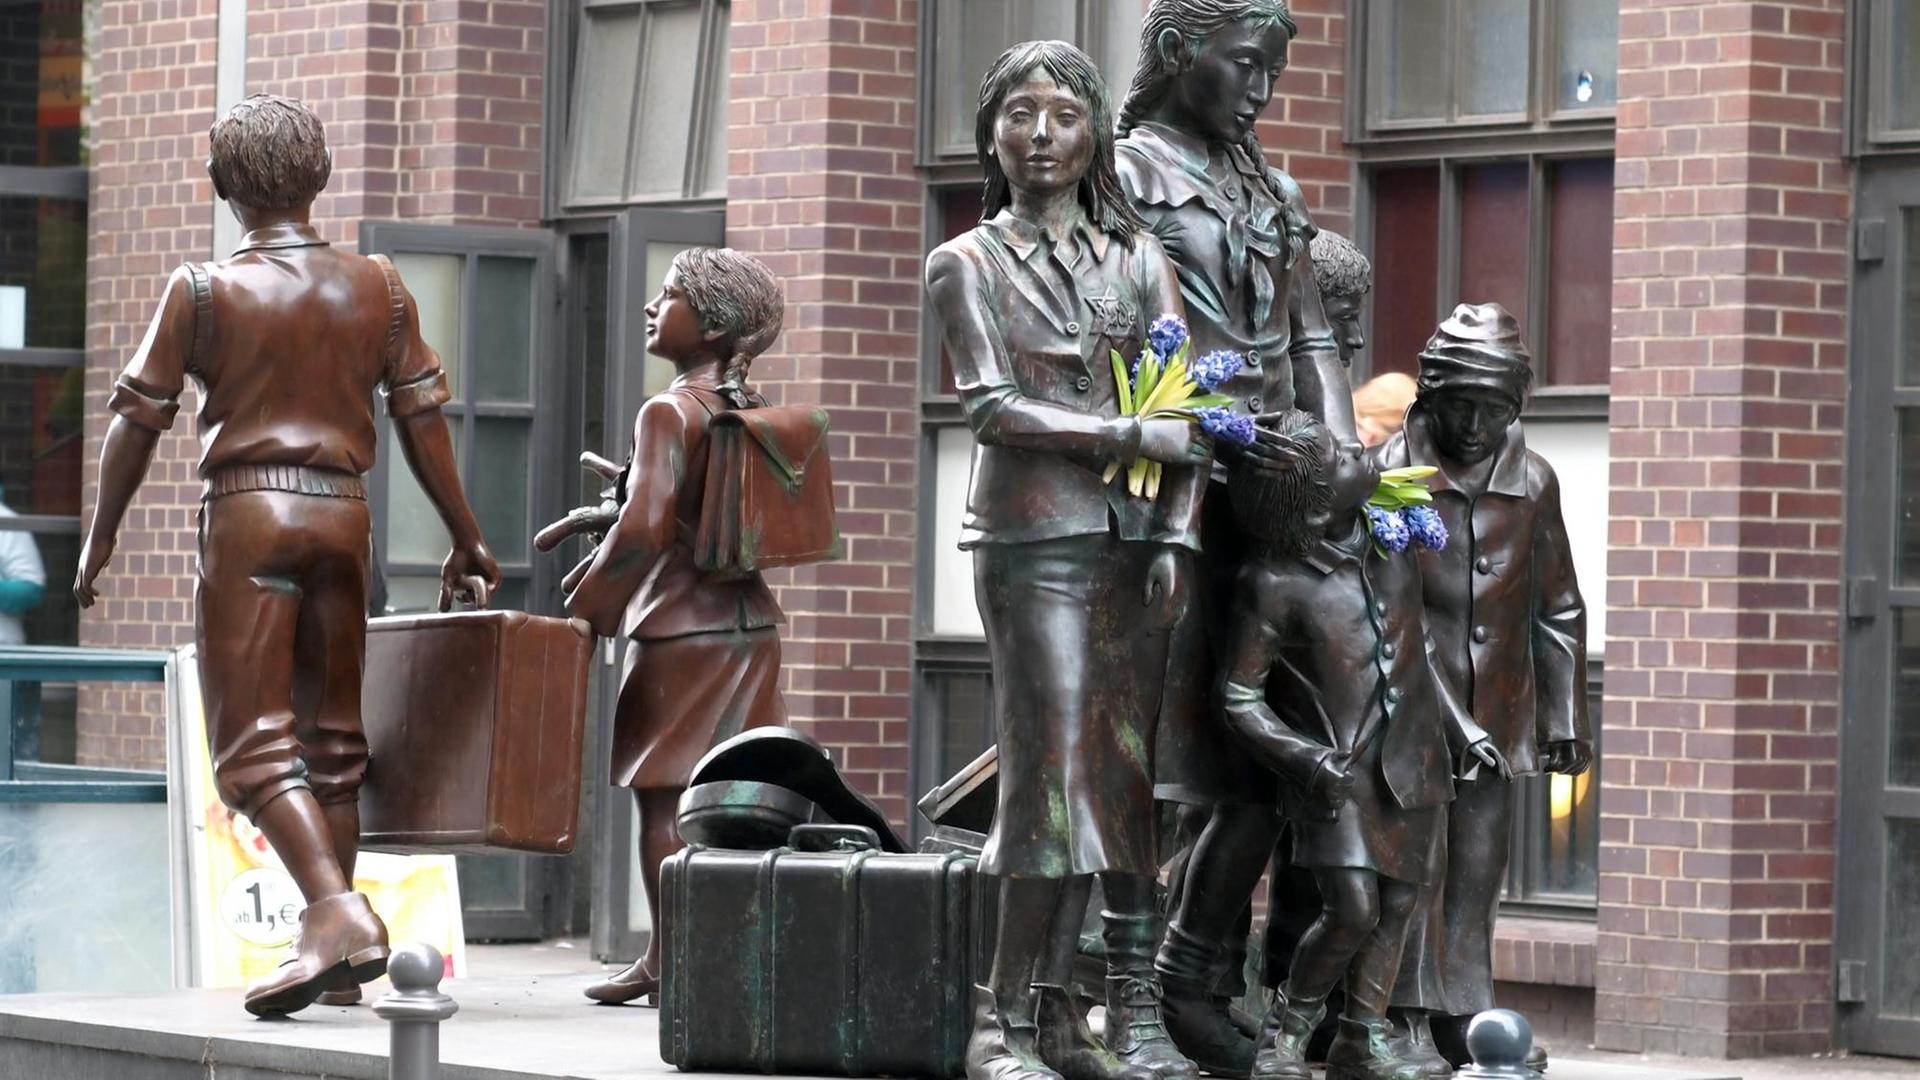 Die Bronzefiguren "Züge in das Leben - Züge in den Tod" von Frank Meisler stehen vor dem Bahnhof Friedrichstraße in Berlin und erinnern an die Deportation von Kindern während des Nationalsozialismus.